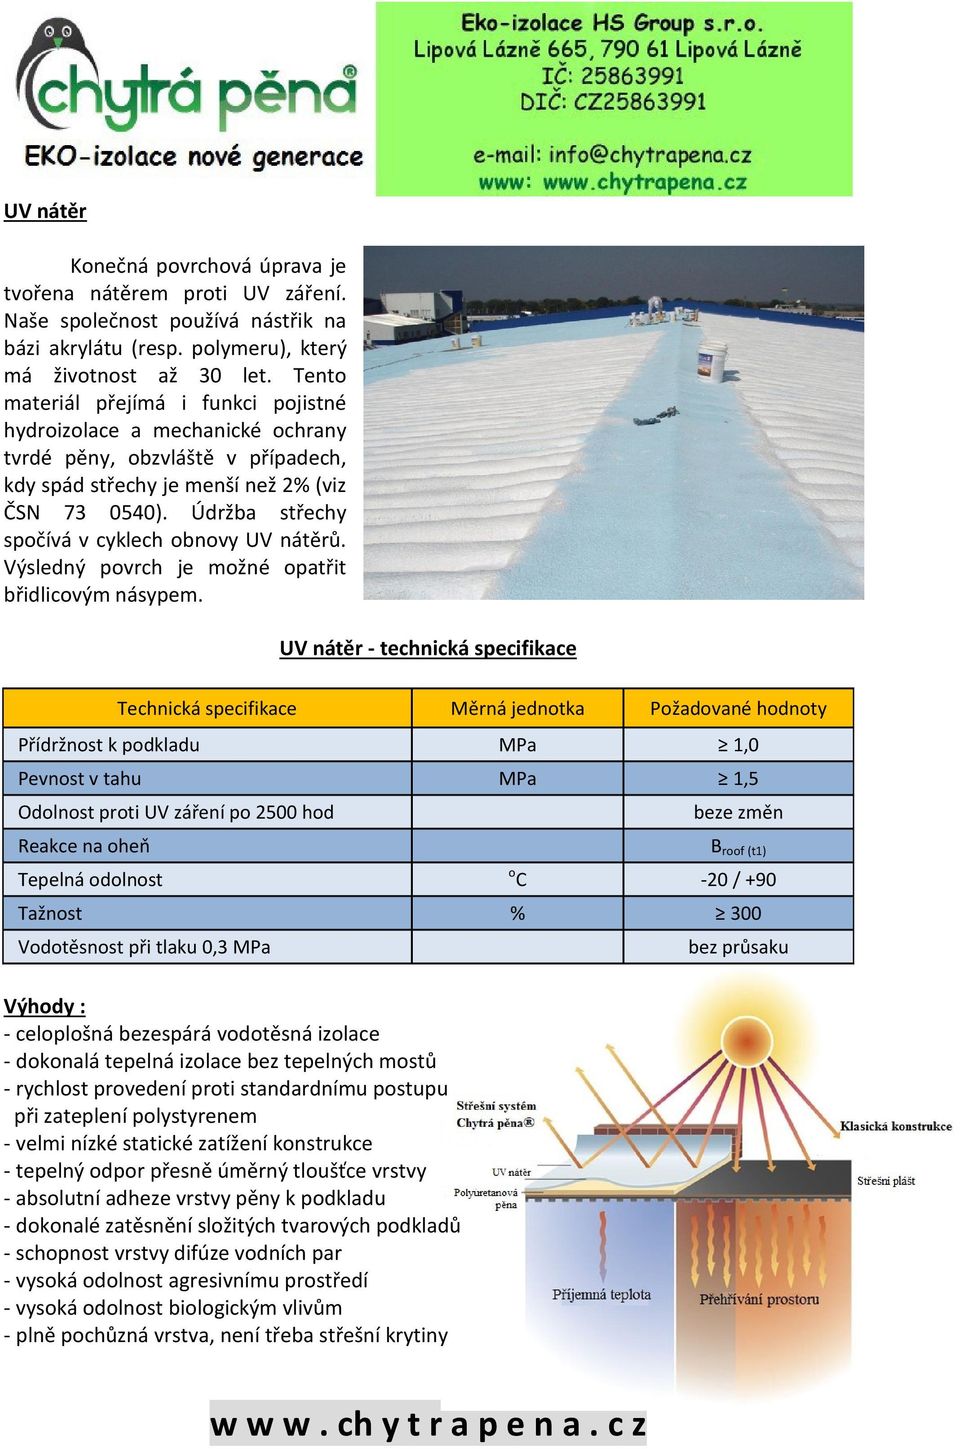 Údržba střechy spočívá v cyklech obnovy UV nátěrů. Výsledný povrch je možné opatřit břidlicovým násypem.